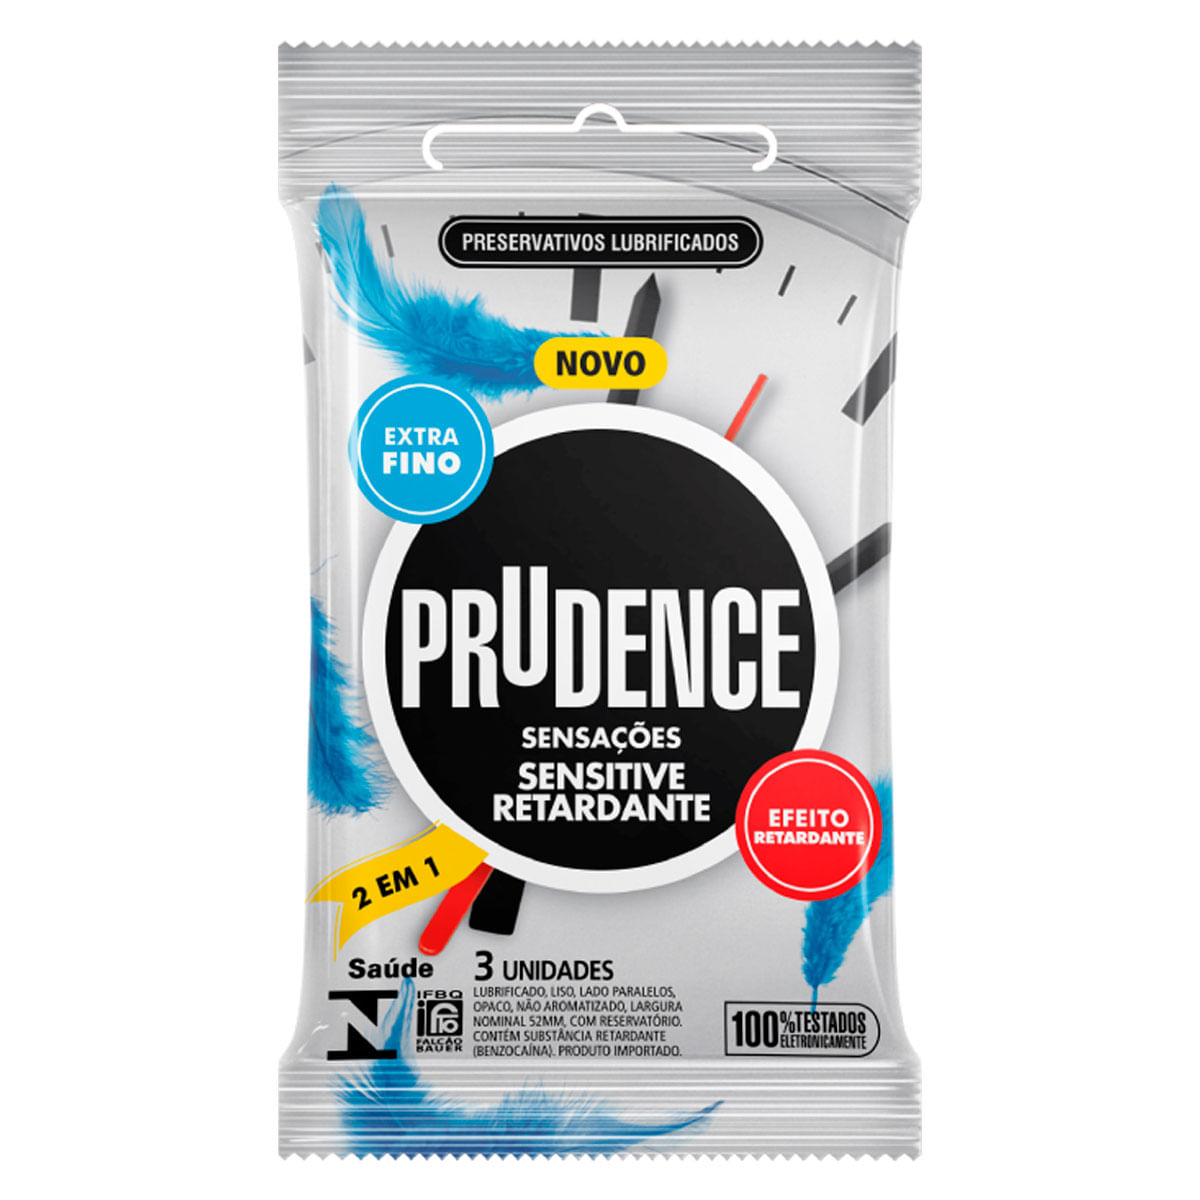 Preservativo Sensitive Retardante Extra Fino 2 em 1 com 3 unidades Prudence